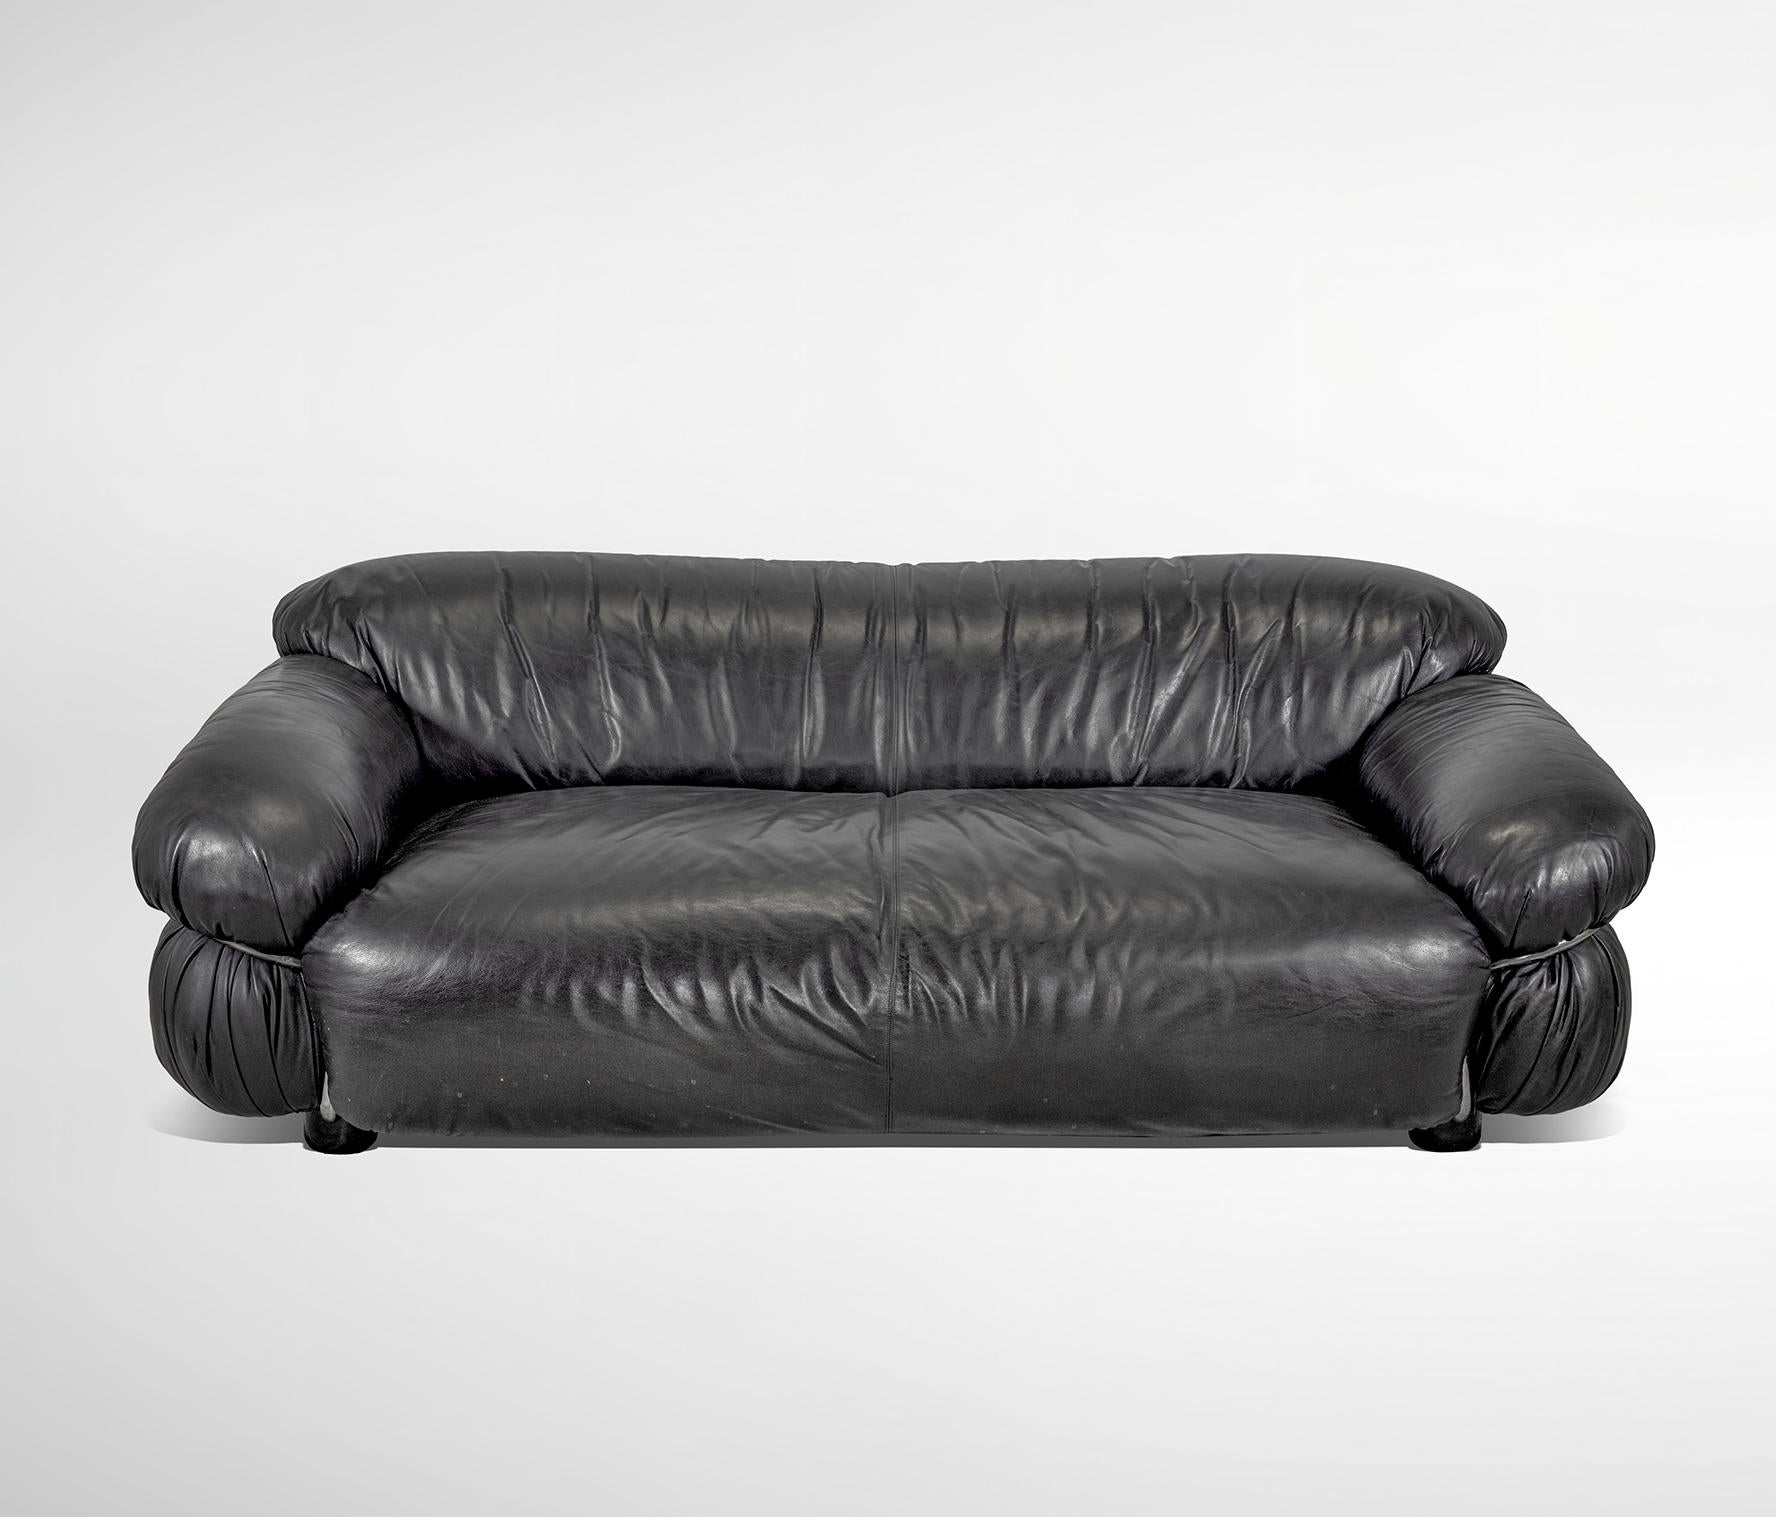 Zweisitziges Sofa, entworfen von Gianfranco Frattini für Cassina, 1969.
Original-Etikett.
Schwarzes Leder, ausgezeichneter Zustand.
Referenz Giuliana Gramigna, 